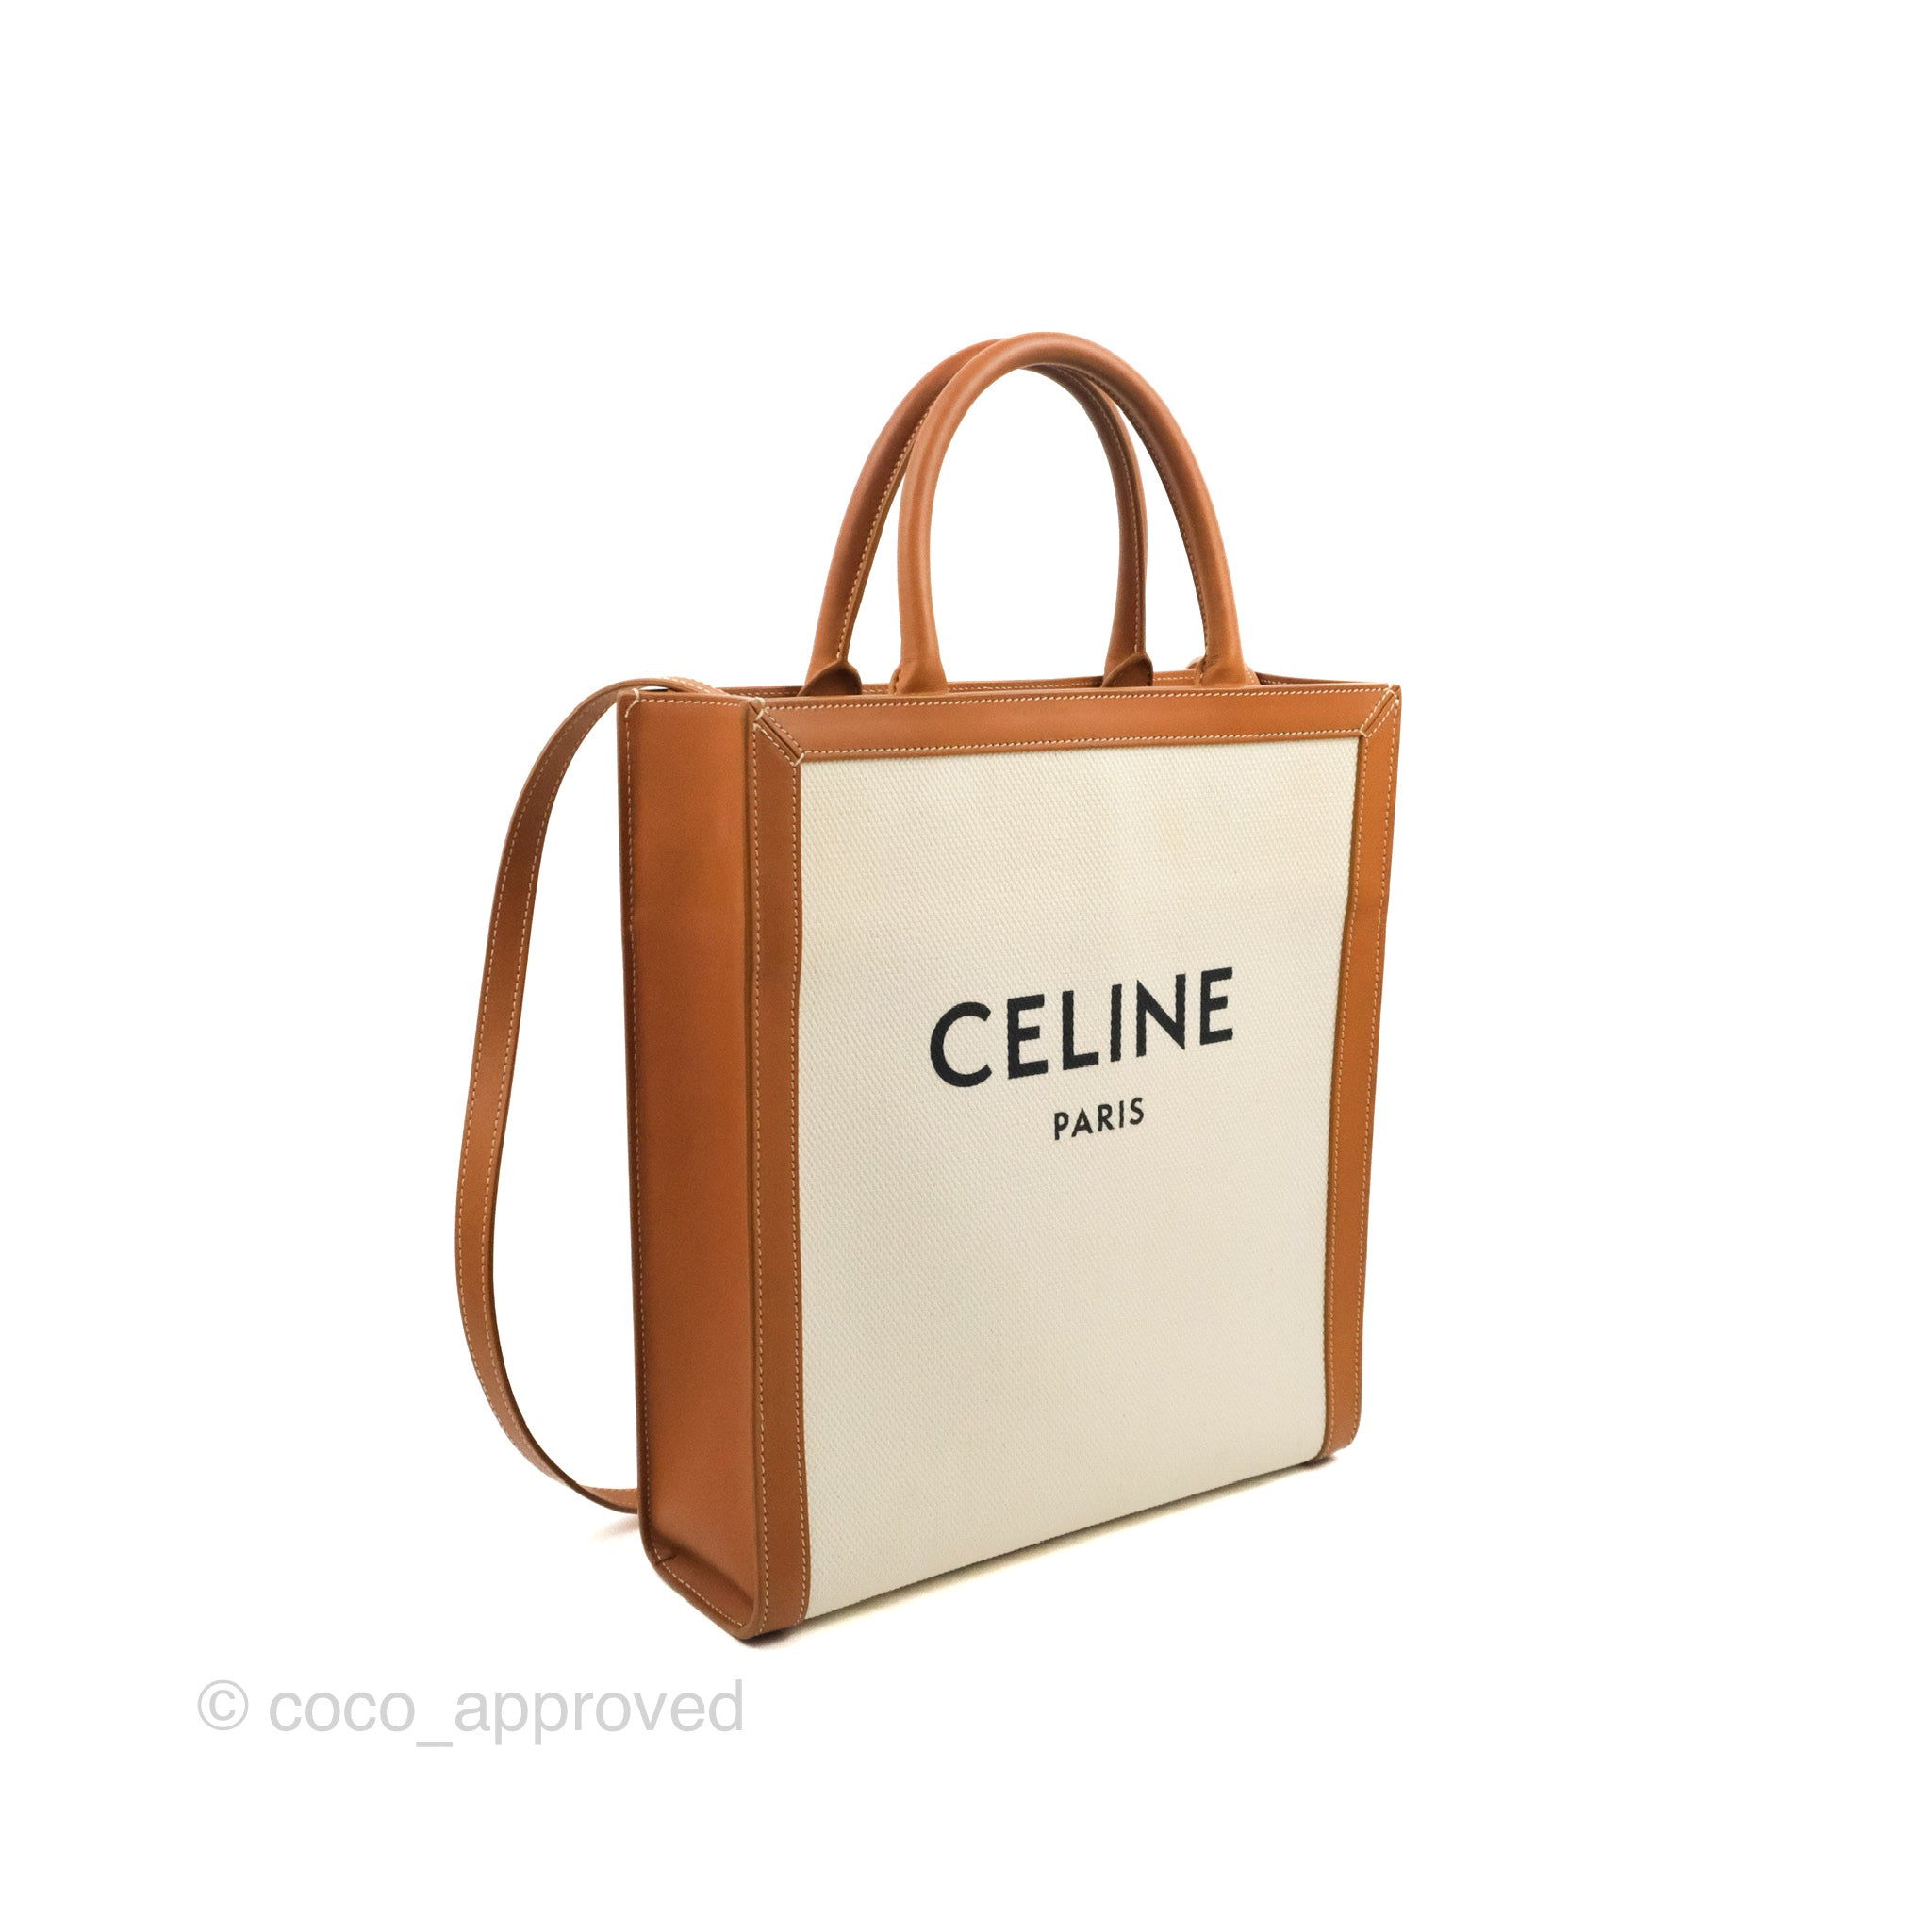 Celine Logo Bucket Bag in Natural